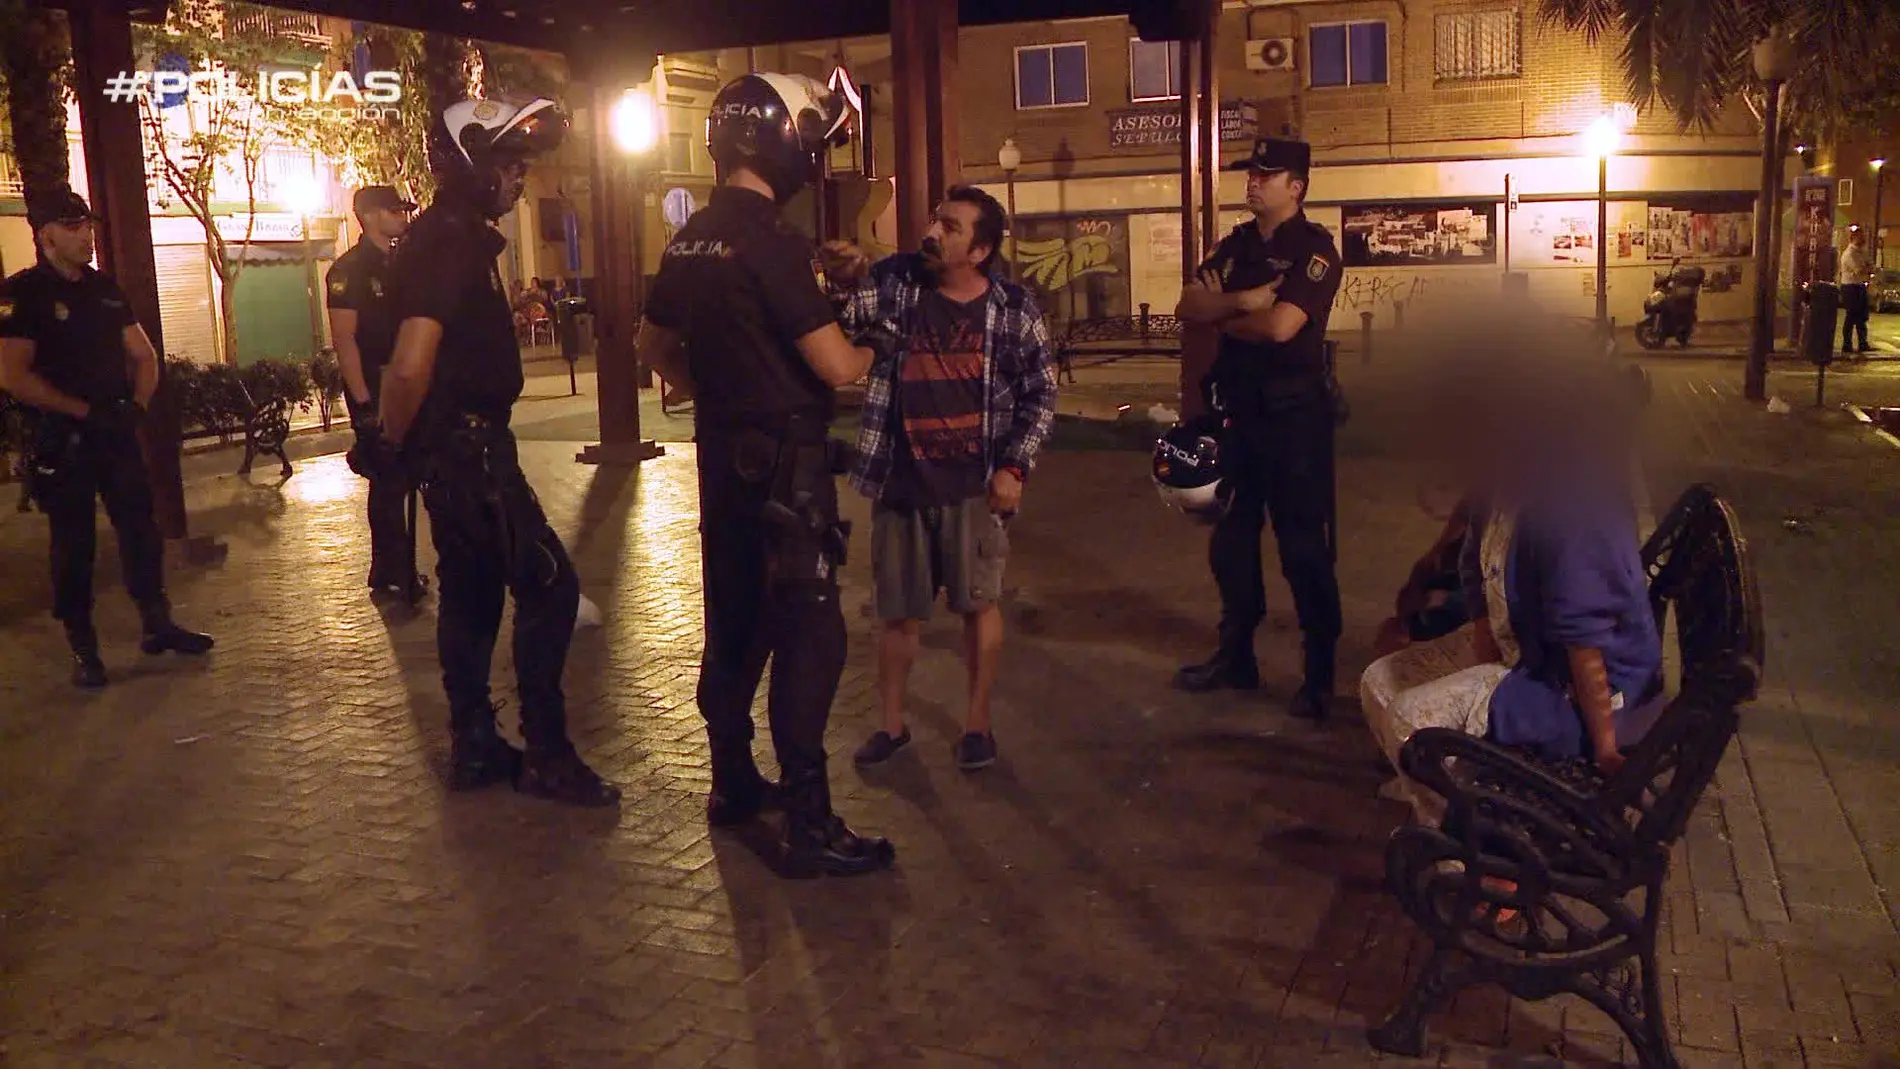 Los agentes intervienen en una pelea en Alicante: "Yo lo mato y luego me pongo las esposas para que me detengáis"